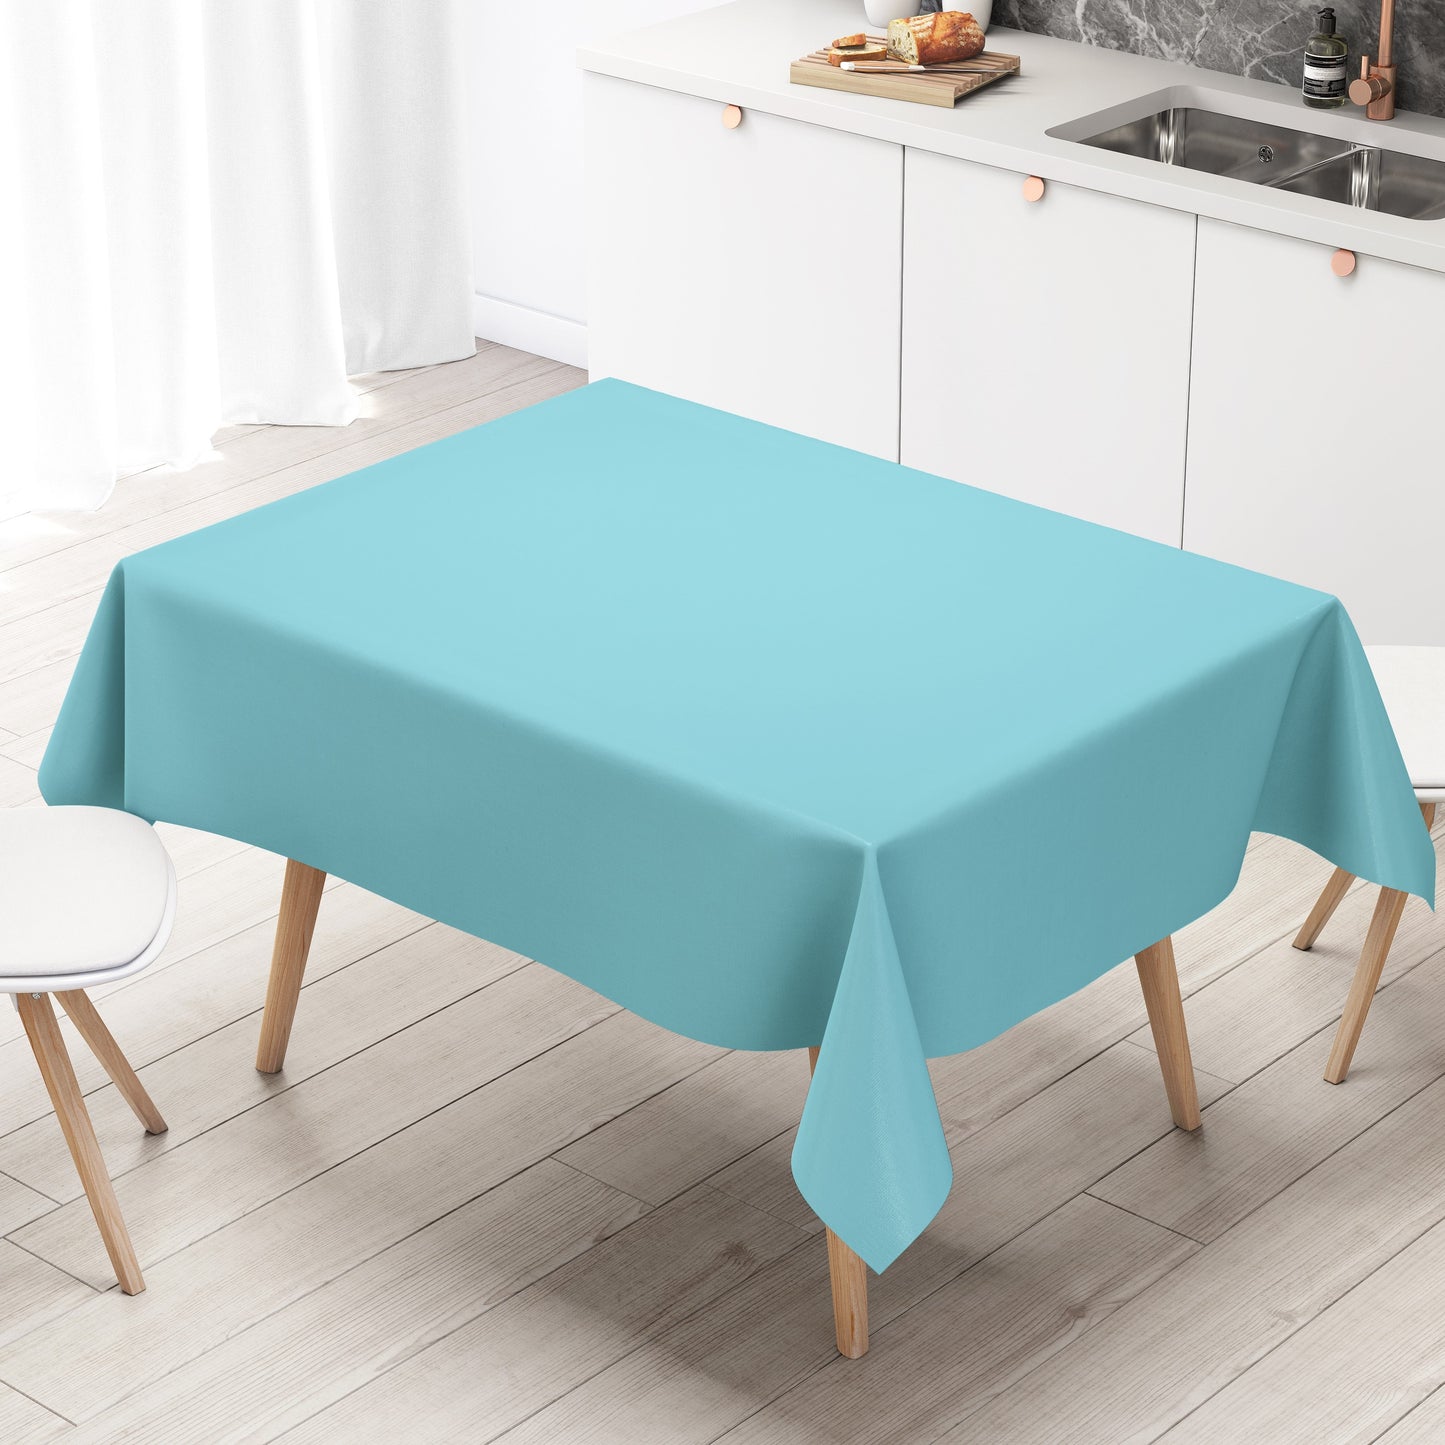 KEVKUS Wachstuch Tischdecke unifarben 291 hellblau einfarbig wählbar in eckig, rund und oval -